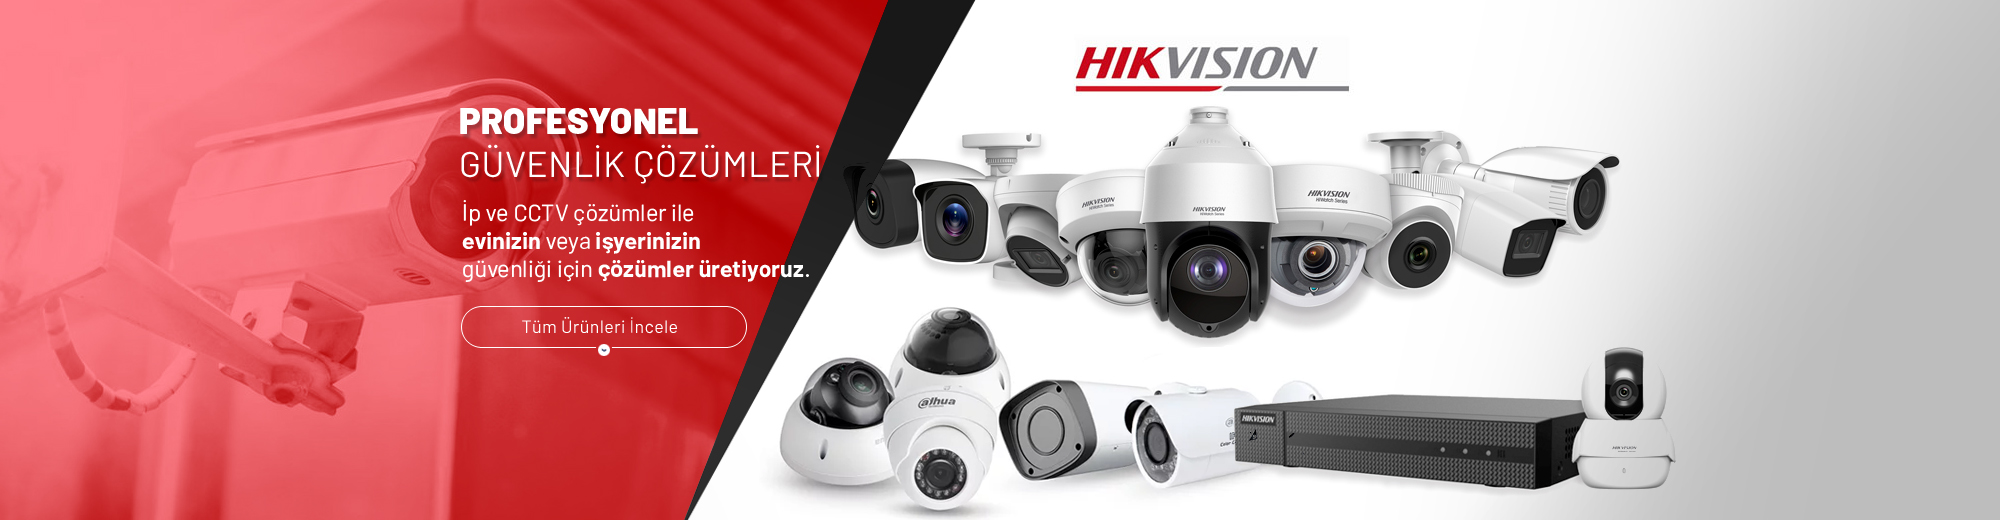 hikvision kamera sistemleri